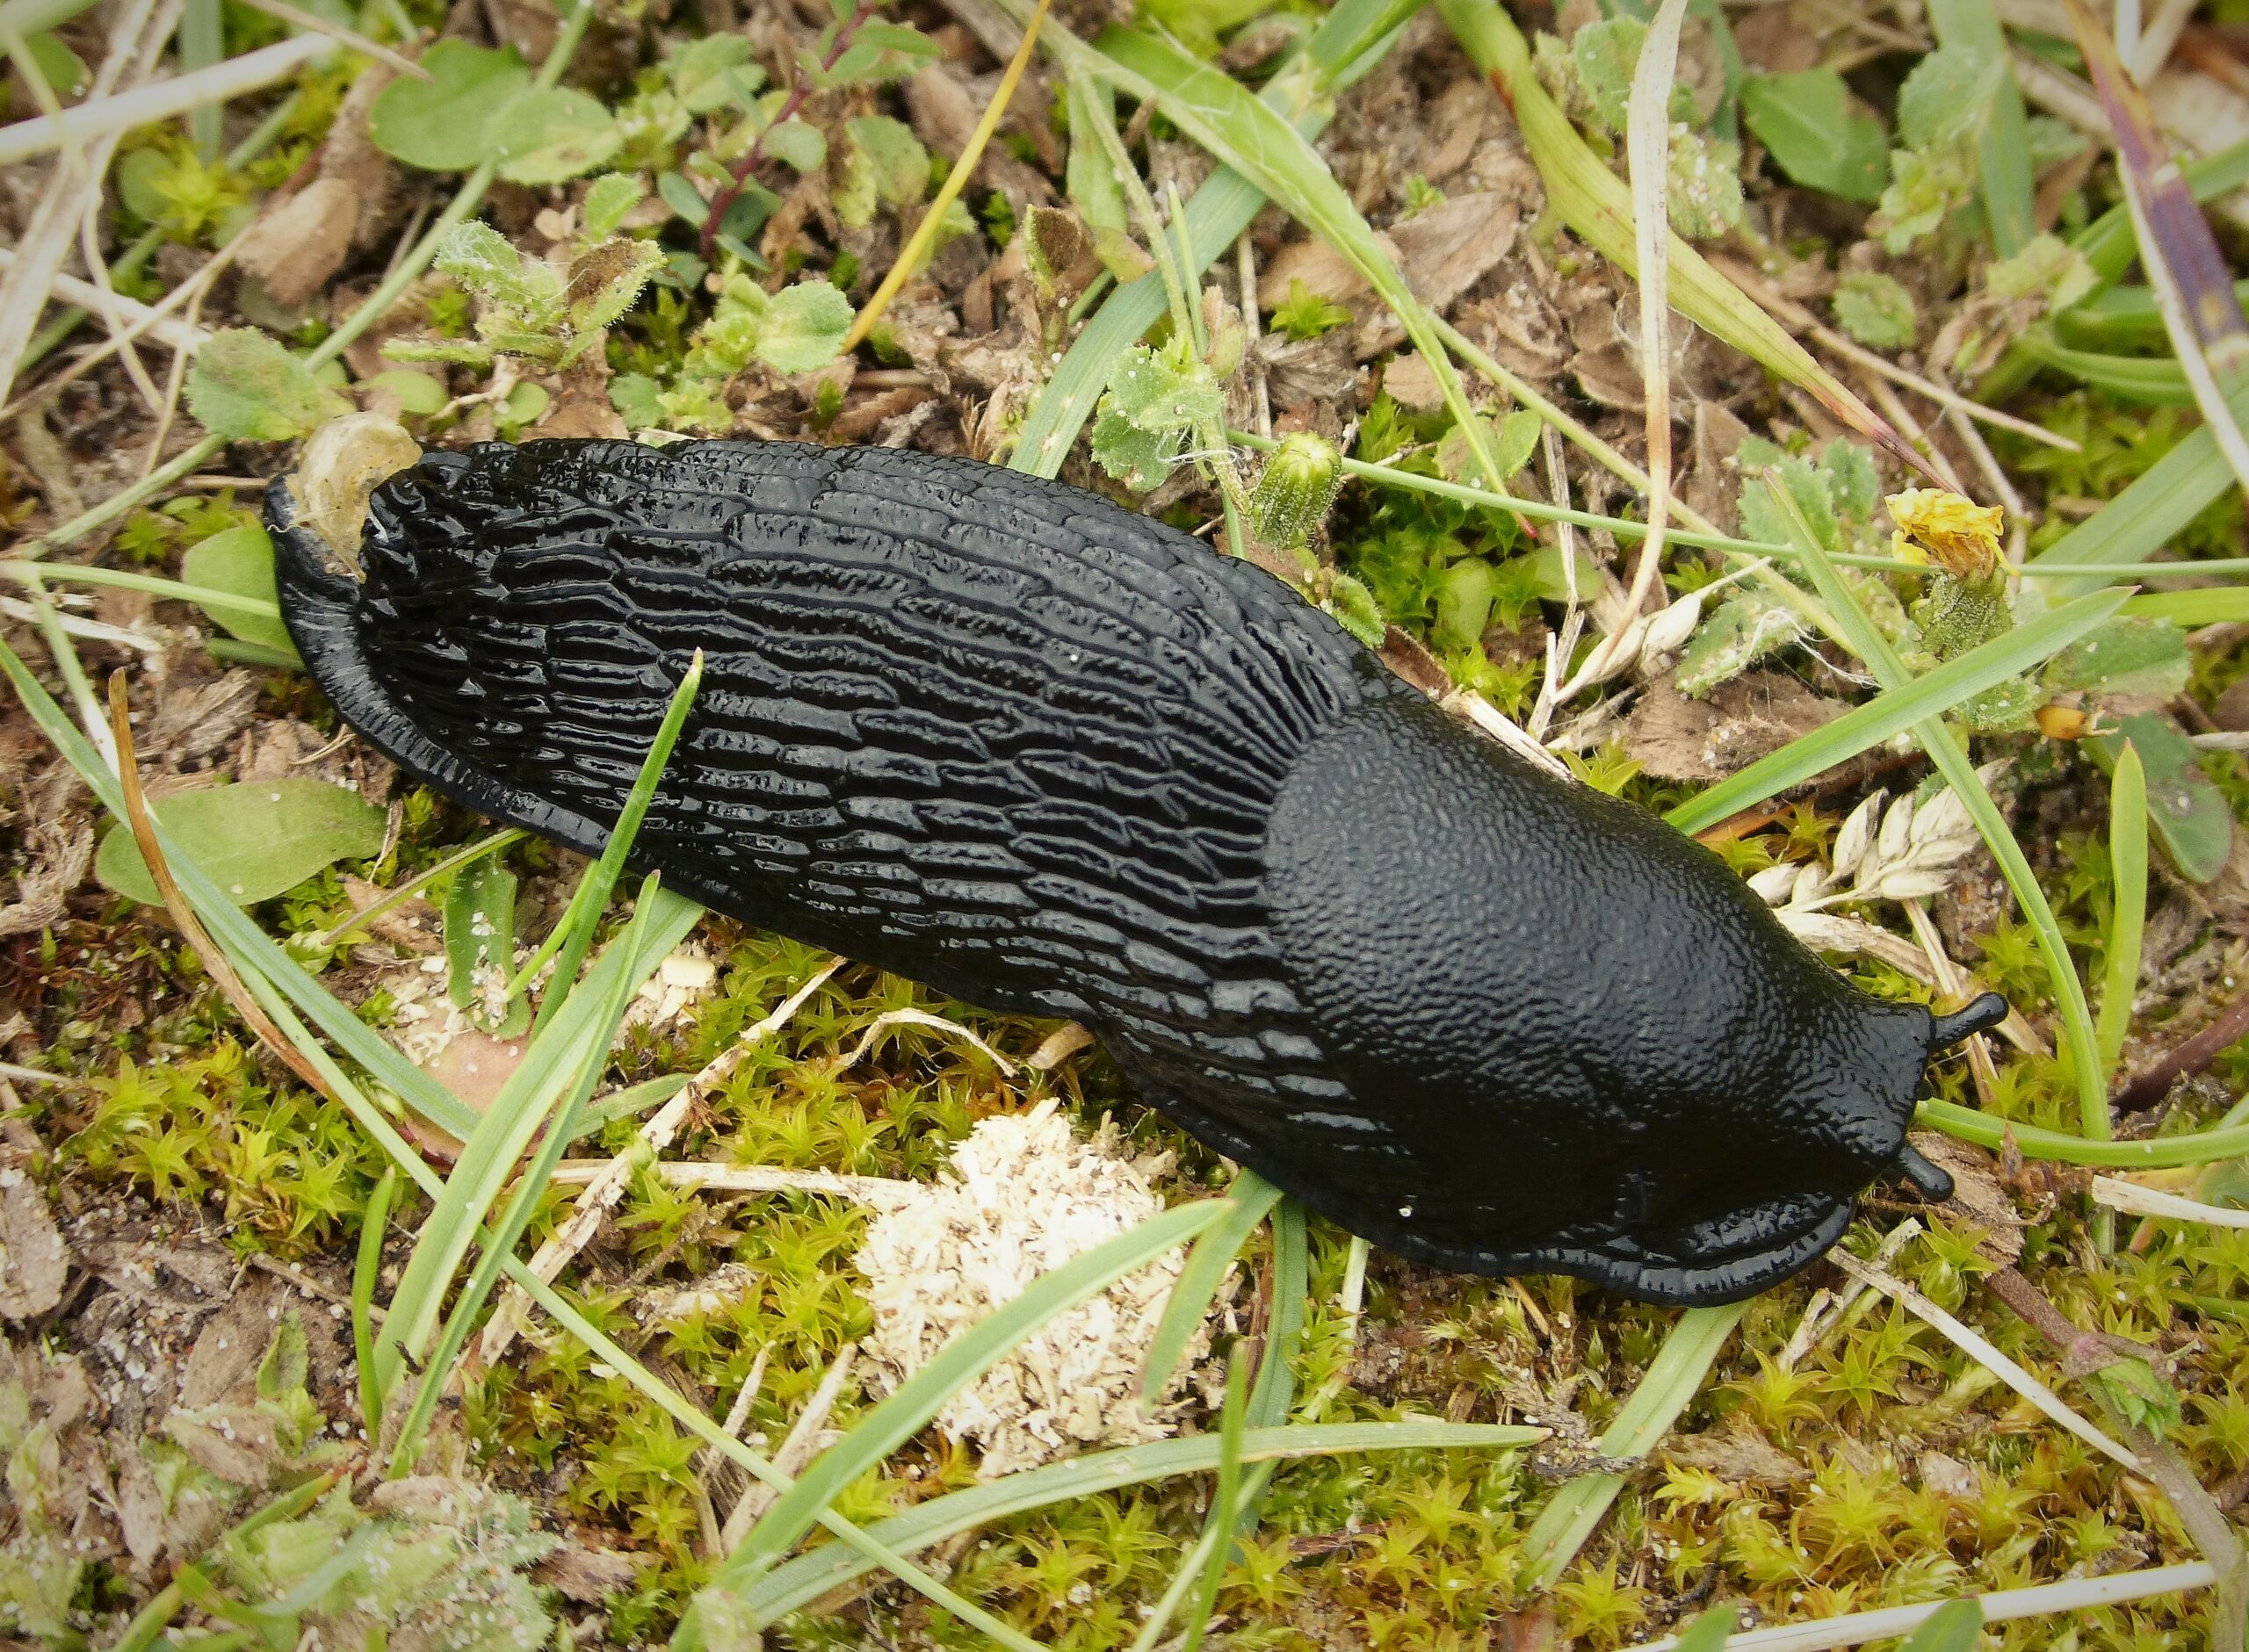 Arion ater. Large Black Slug, on grass.